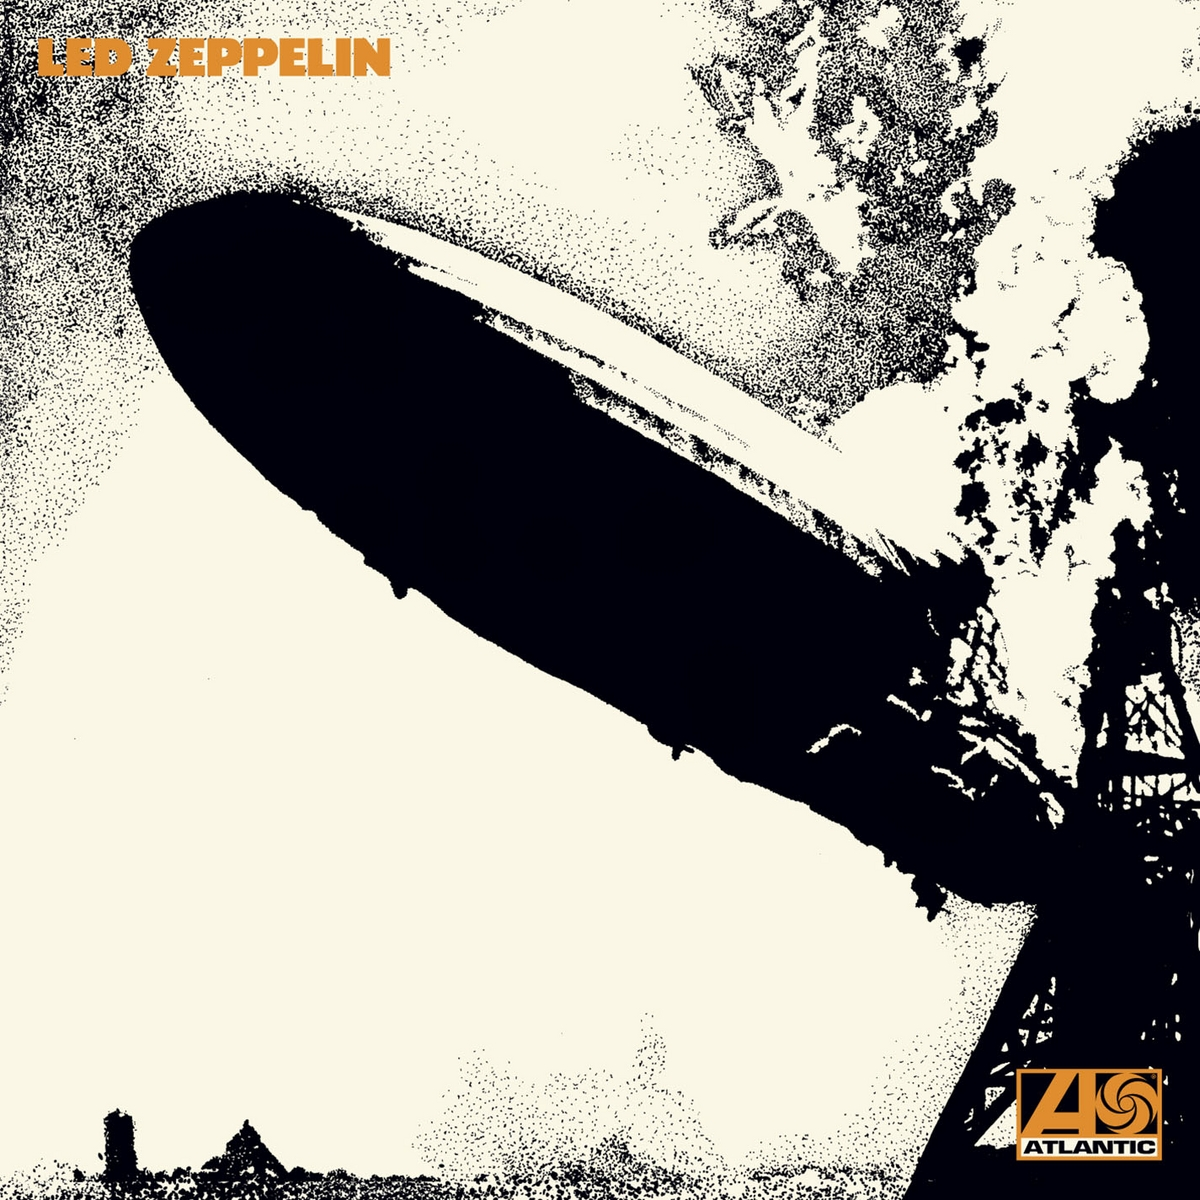 Led Zeppelin - Led Zeppelin Reissue) - (2014 (Vinyl)